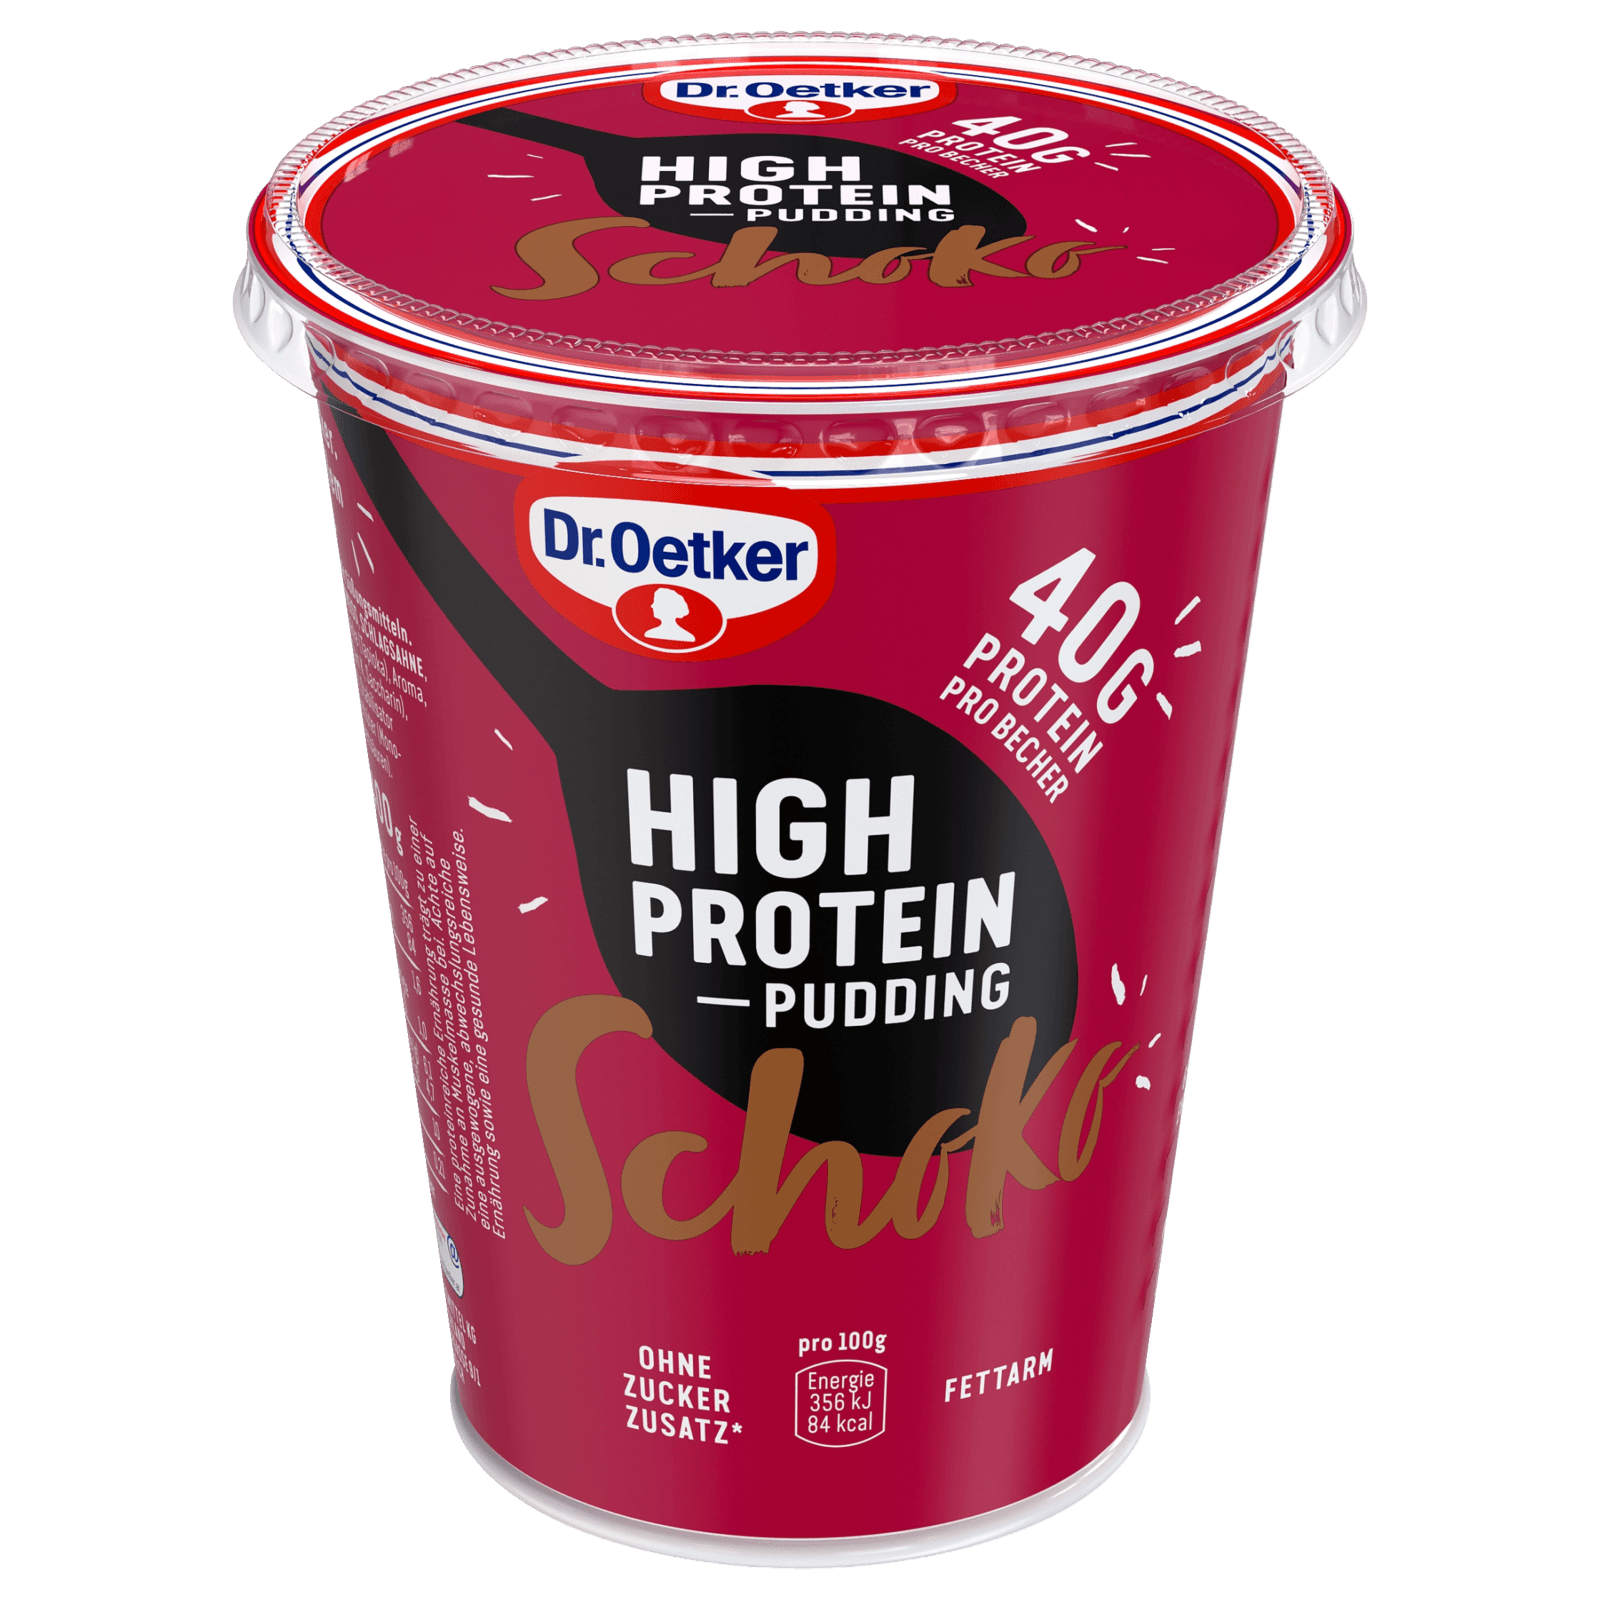 Dr. Oetker High Protein-Pudding Schoko 400g bei REWE online bestellen!